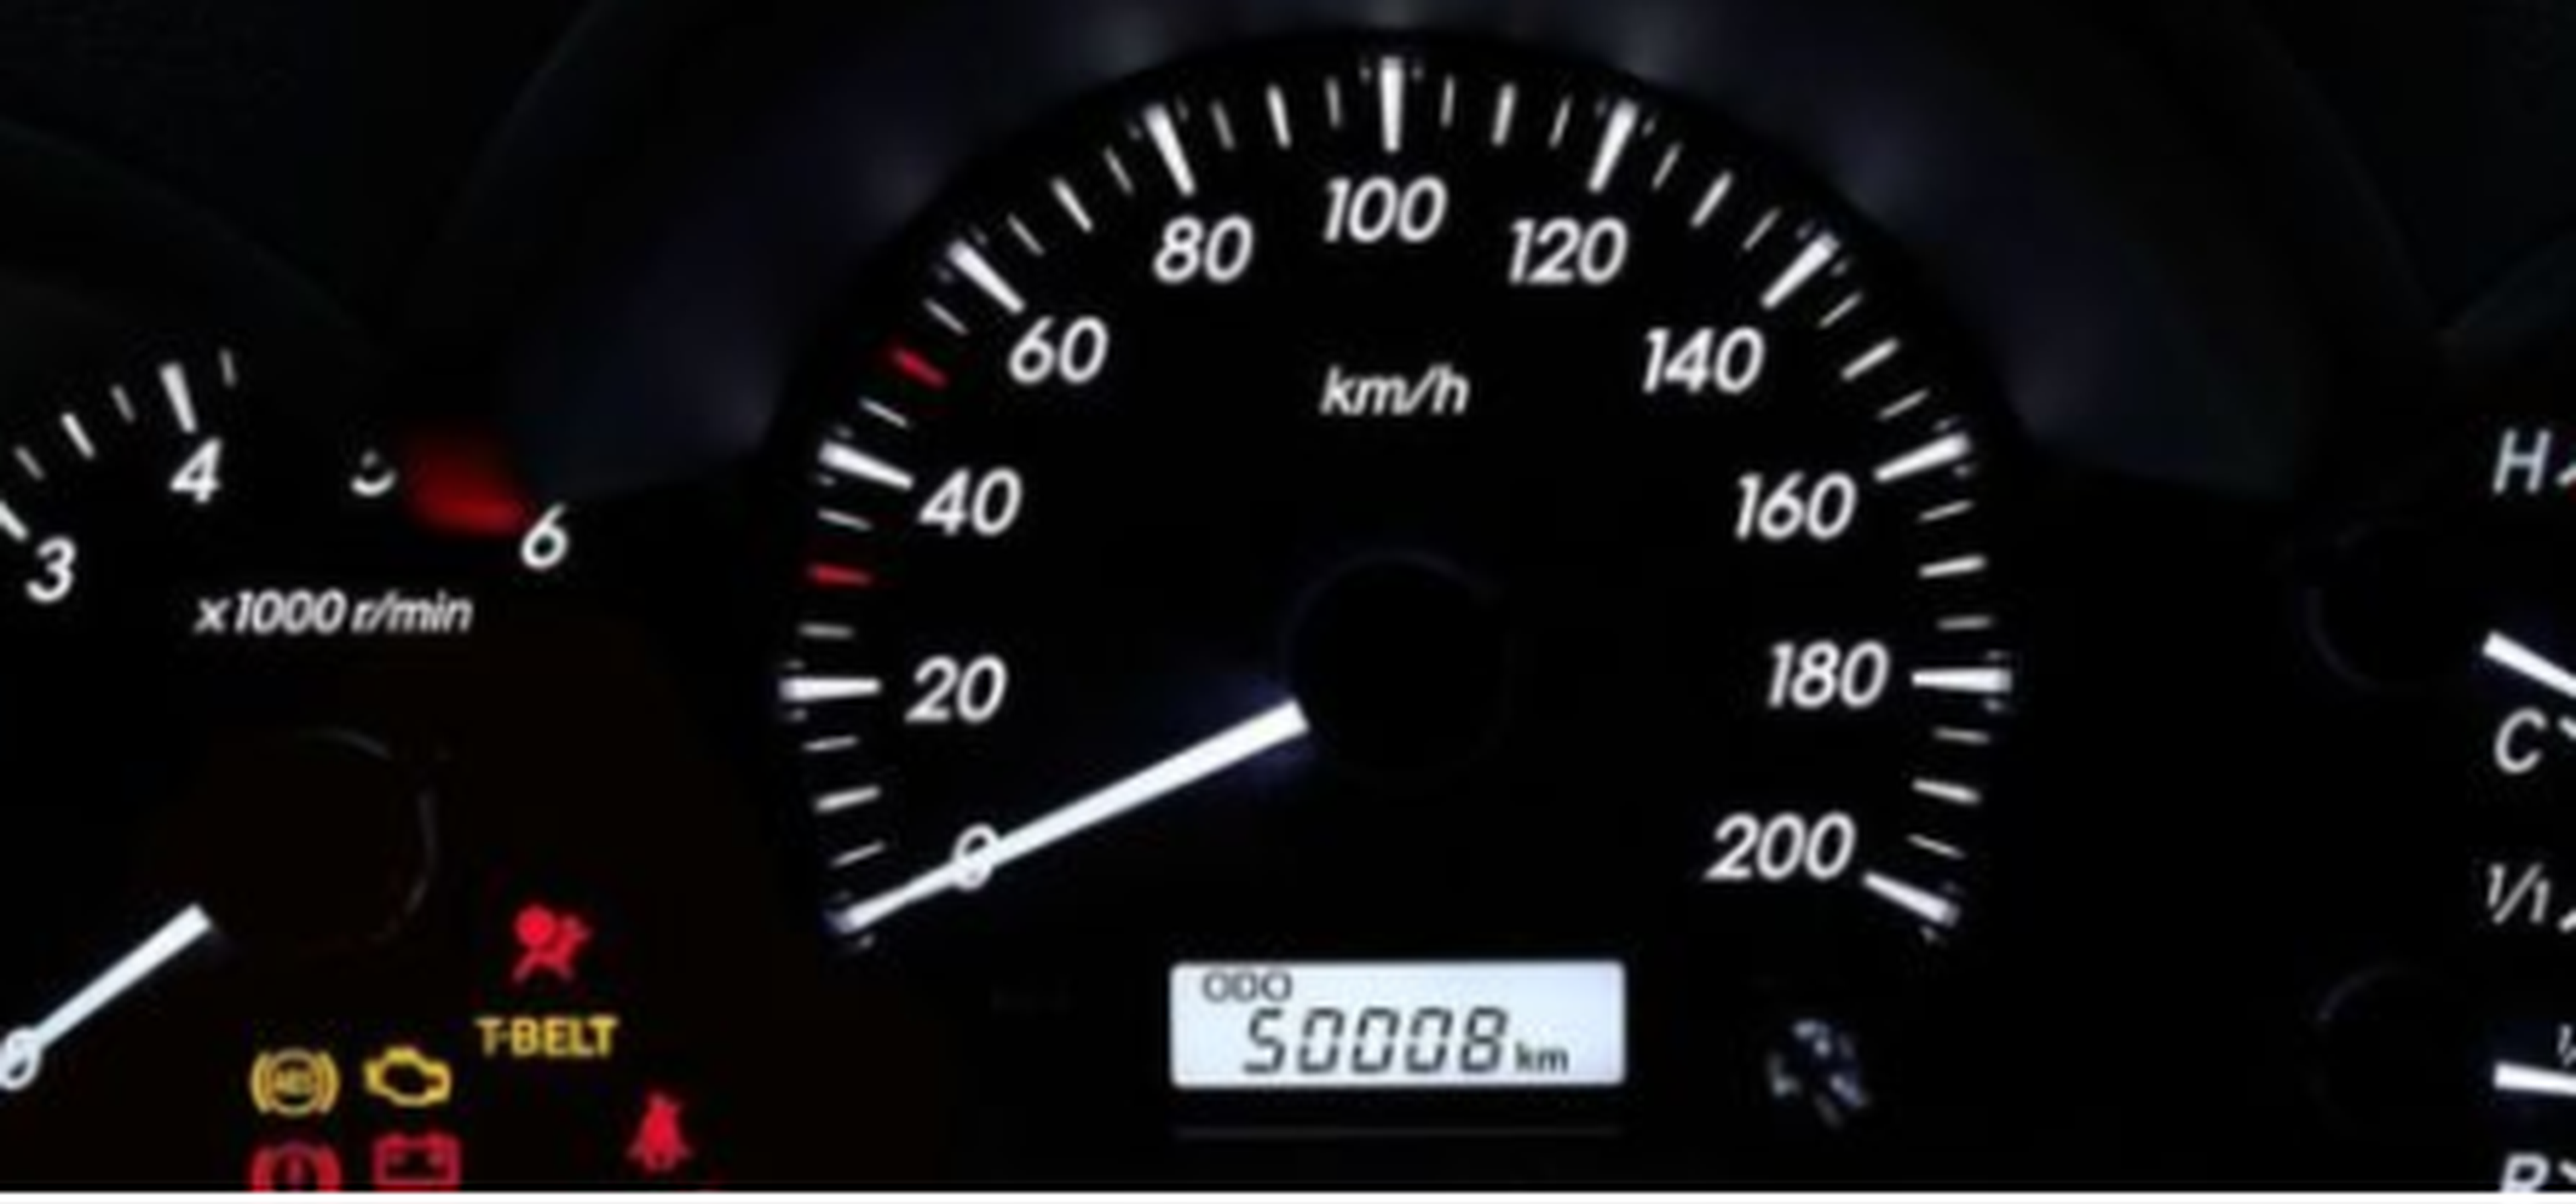 50.000 kms